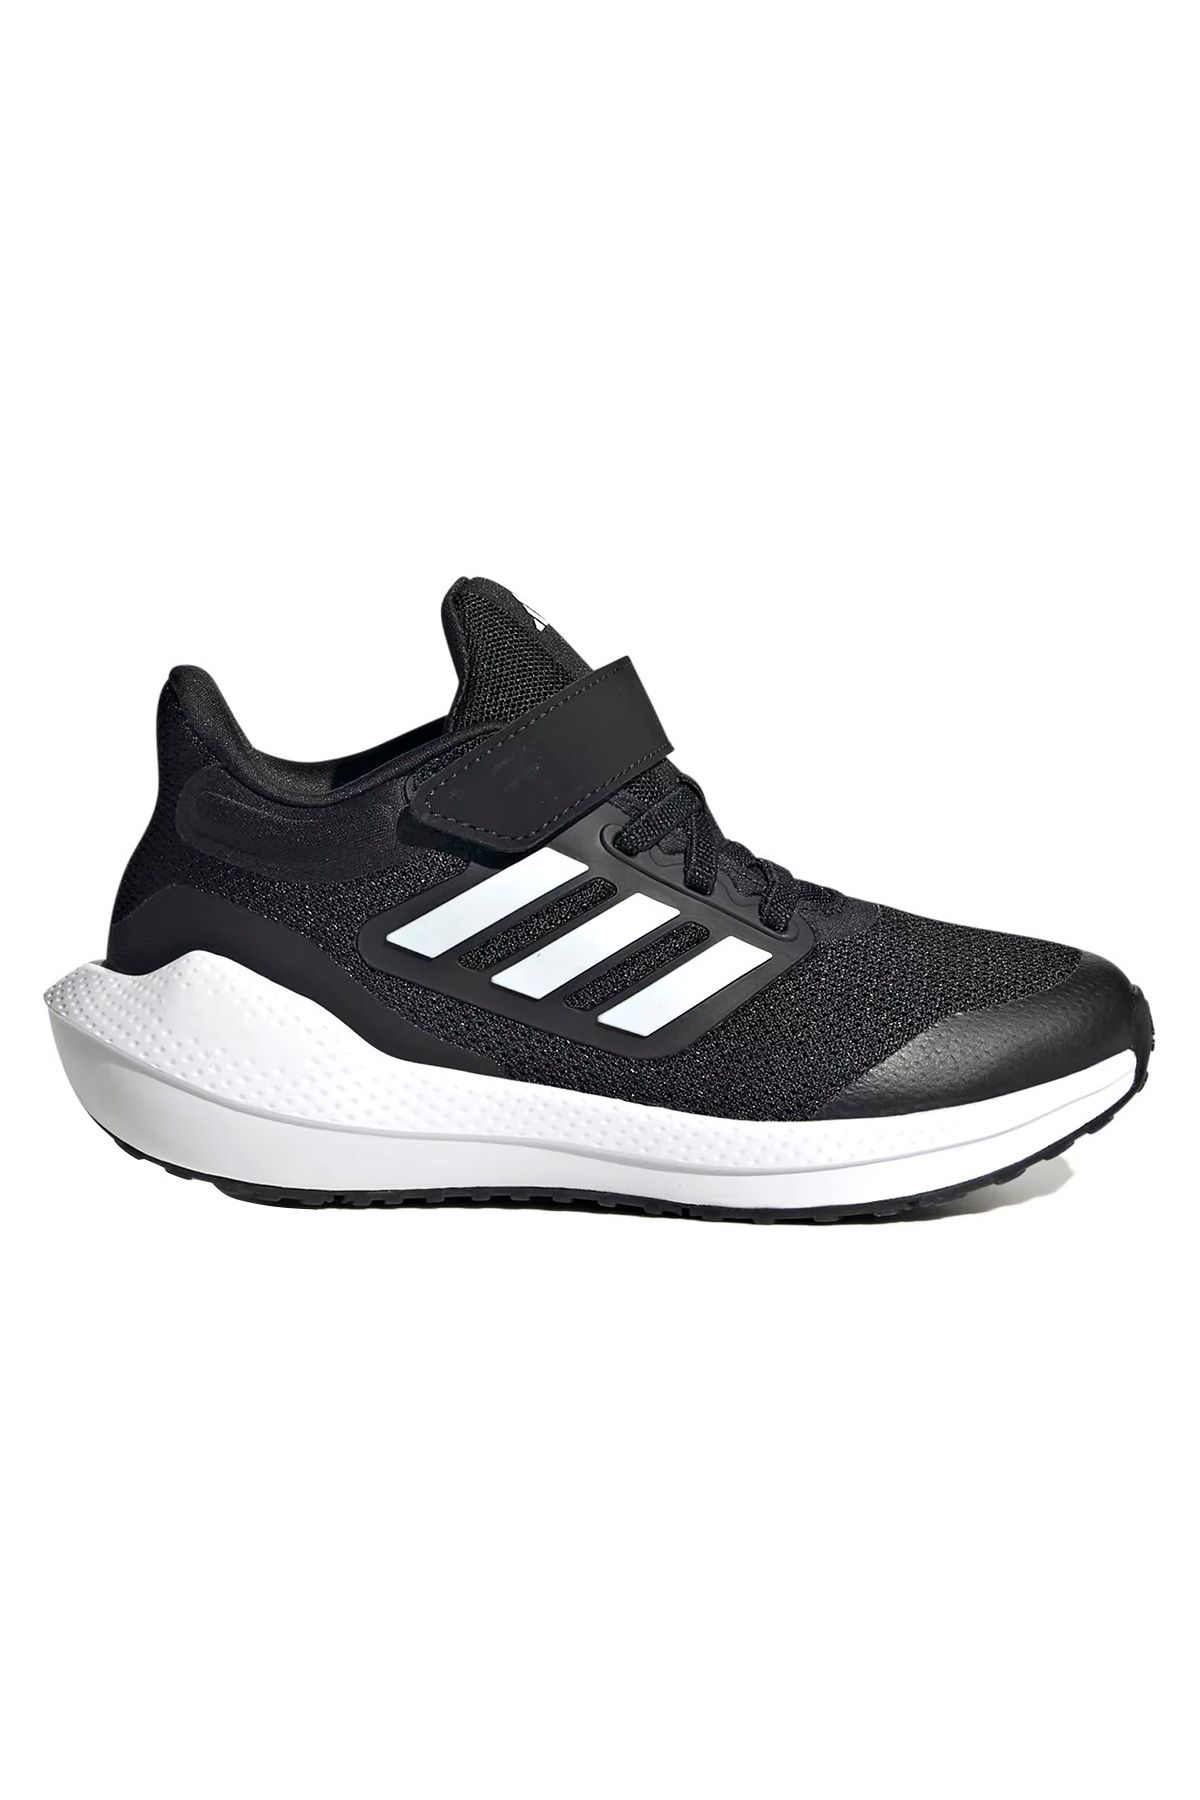 adidas Ultrabounce El K Çocuk Siyah Koşu Ayakkabısı HQ1294